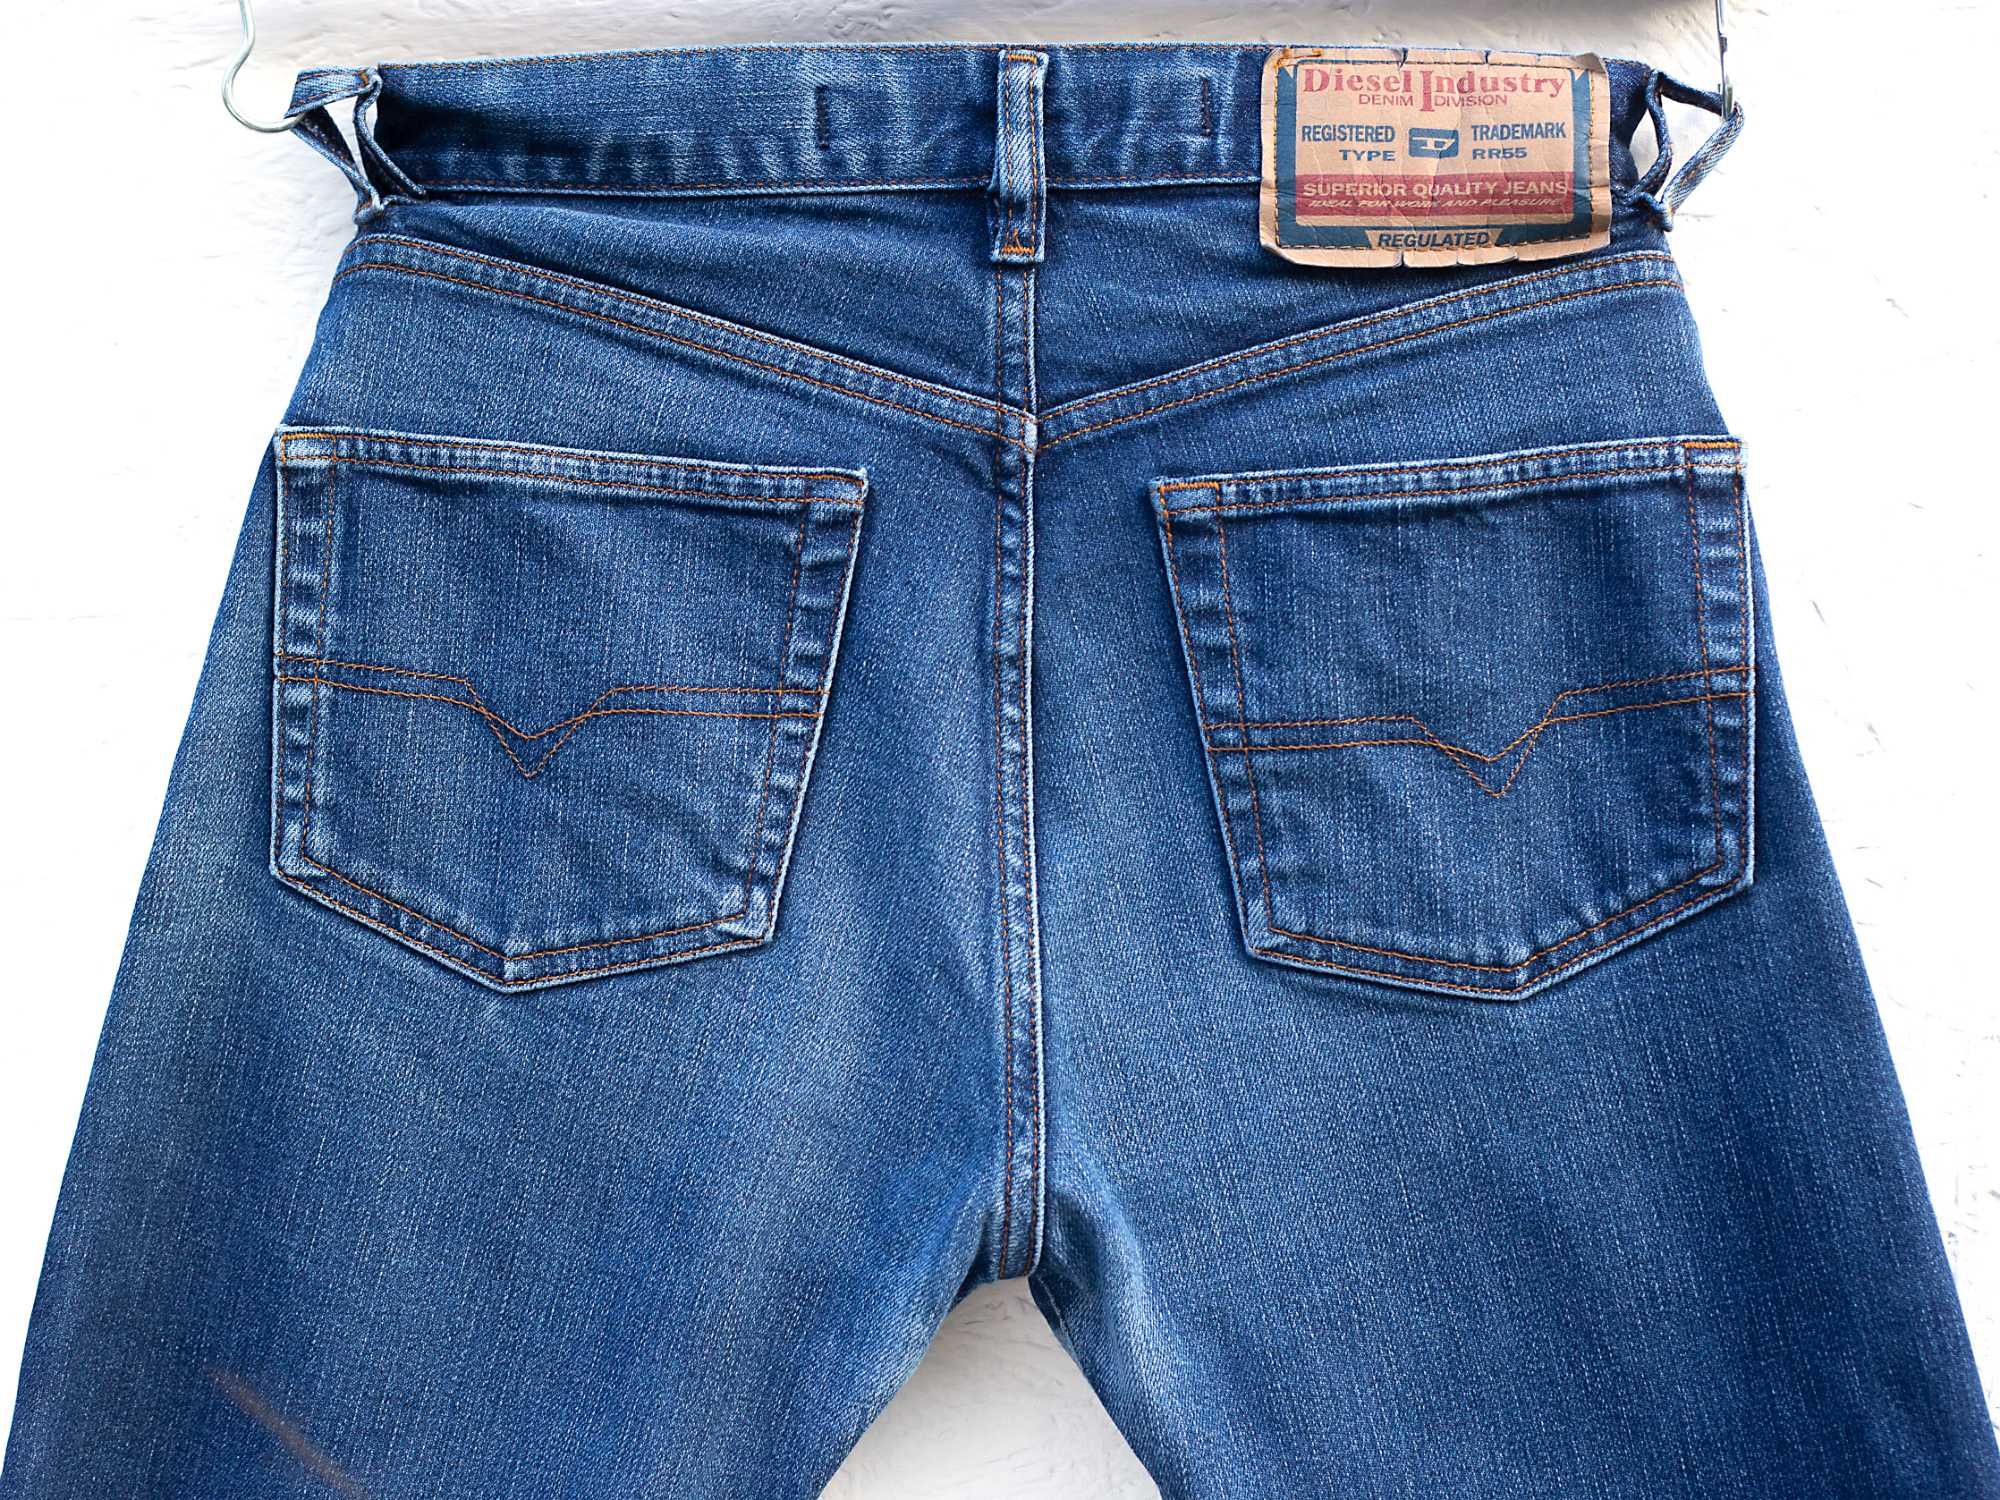 Diesel roz 31 włoskie spodnie jeansy proste nogawki dopasowany krój